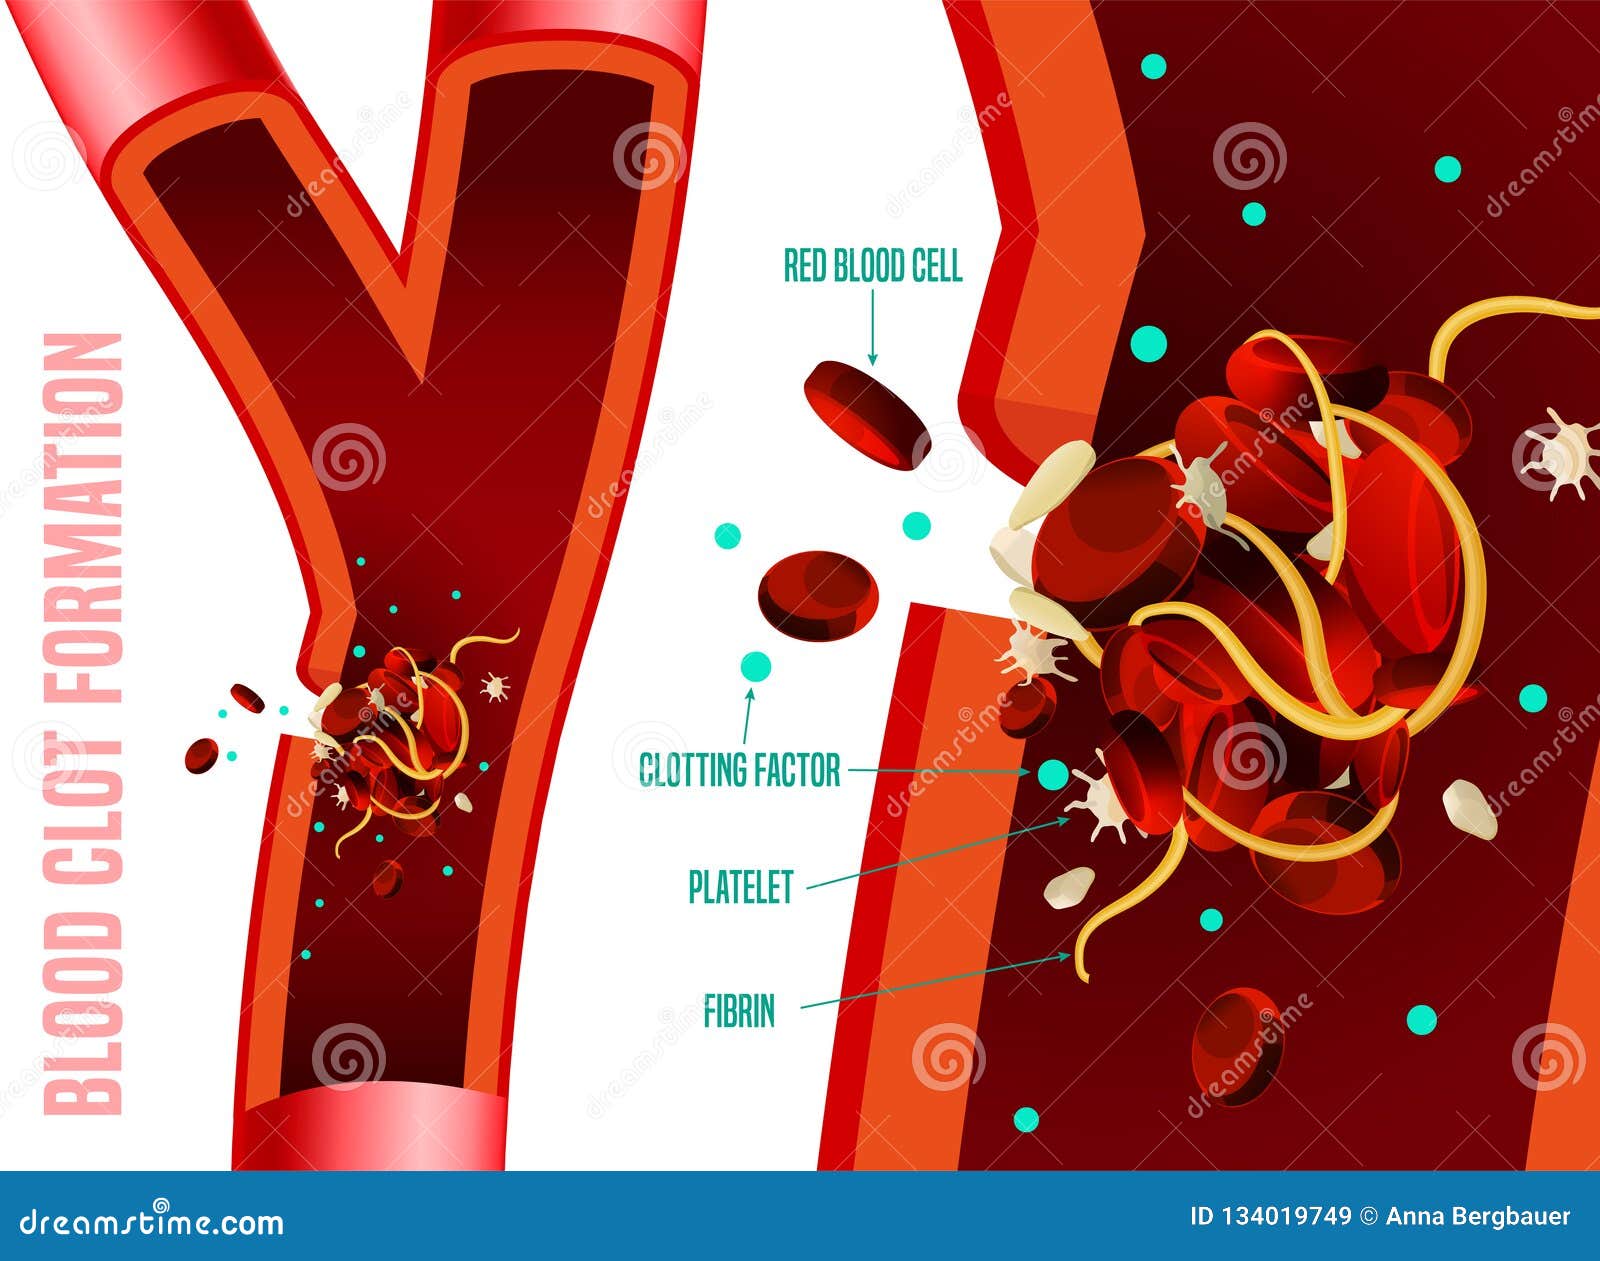 Formação do coágulo de sangue Fatos infographic médicos Ilustração editável do vetor em cores brilhantes isolada em um fundo branco Cuidados médicos e conceito científico com dados úteis Cartaz horizontal